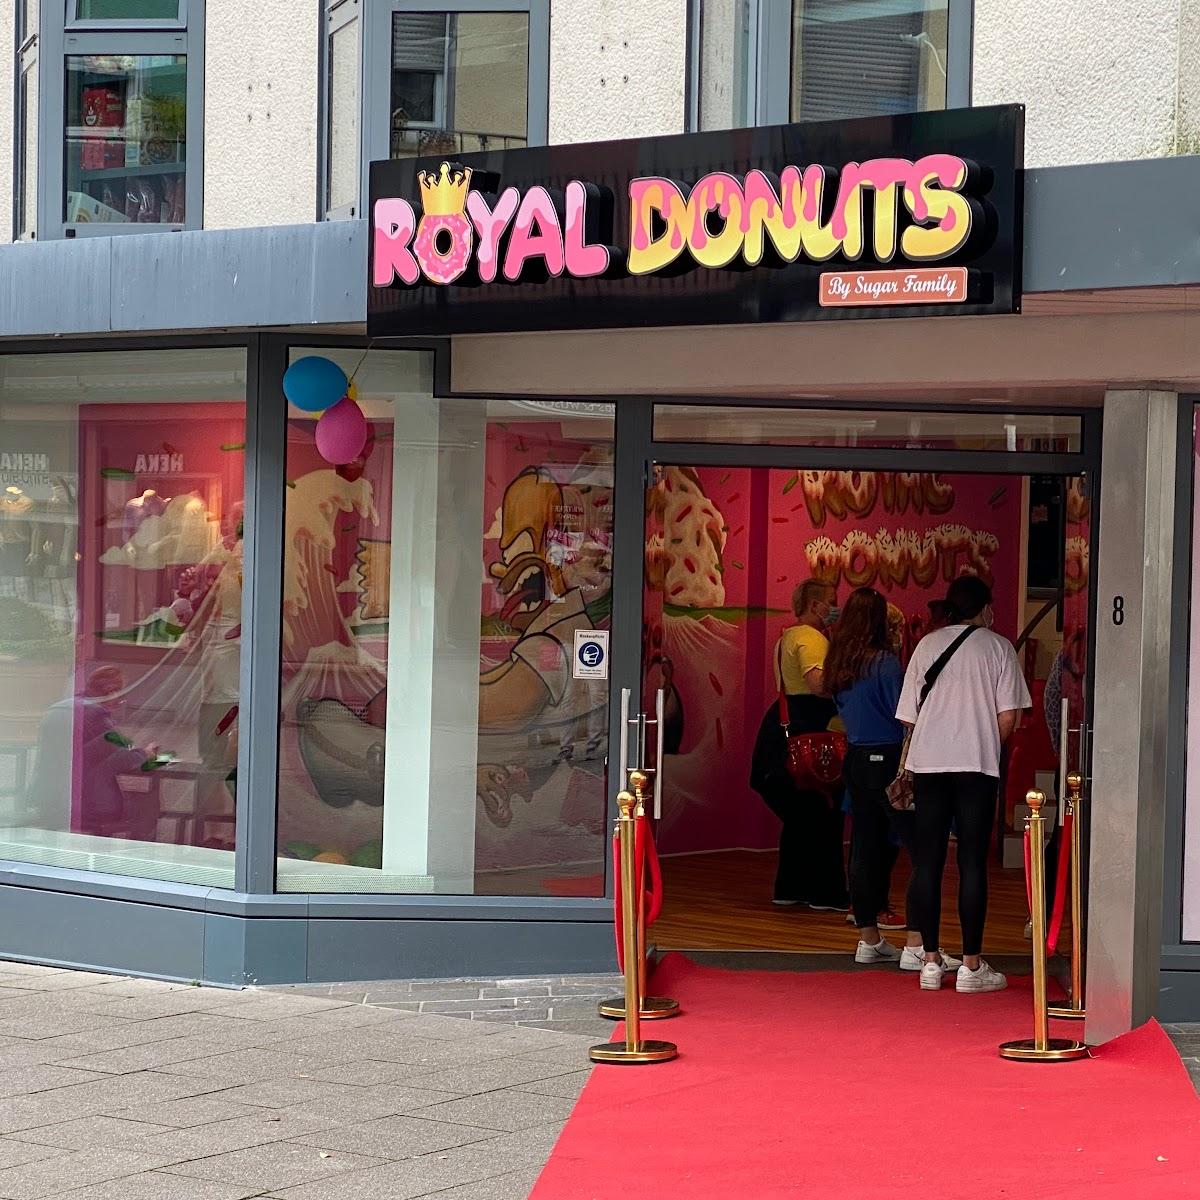 Restaurant "Royal Donuts" in Friedrichshafen